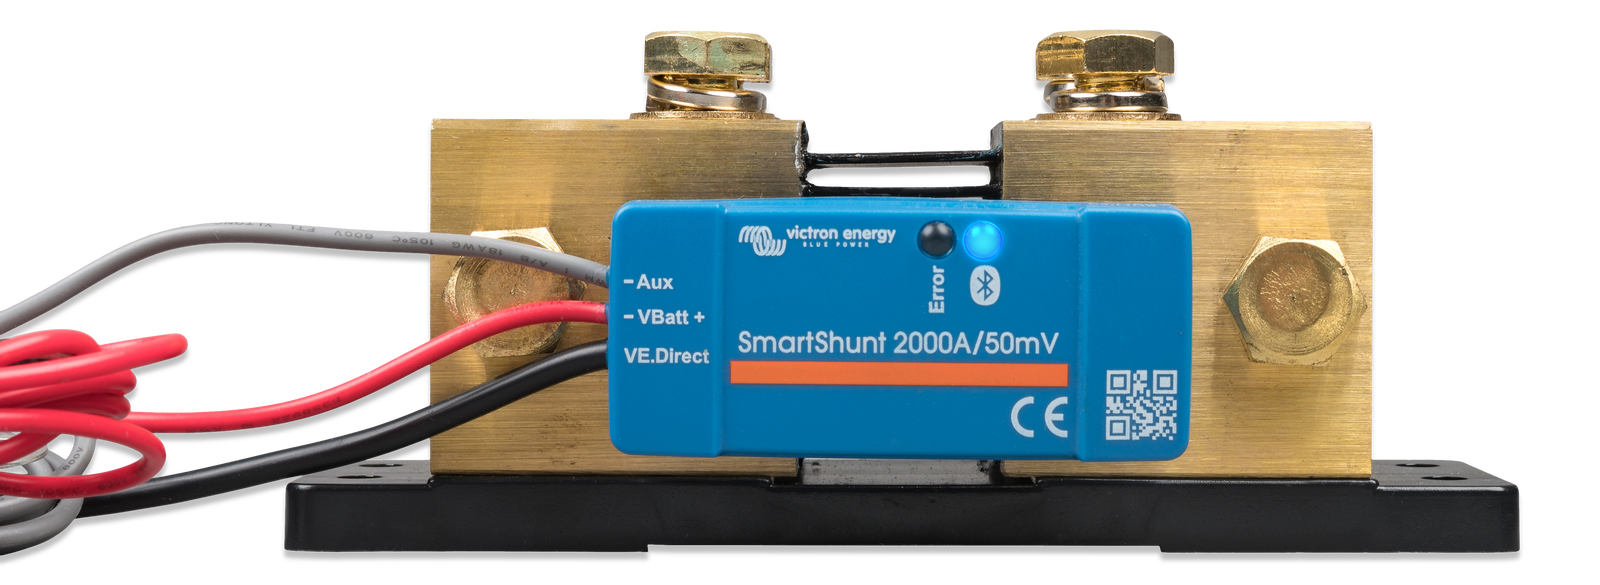 Victron Energy SmartShunt Moniteur de batterie 500 A (Bluetooth) - Volthium